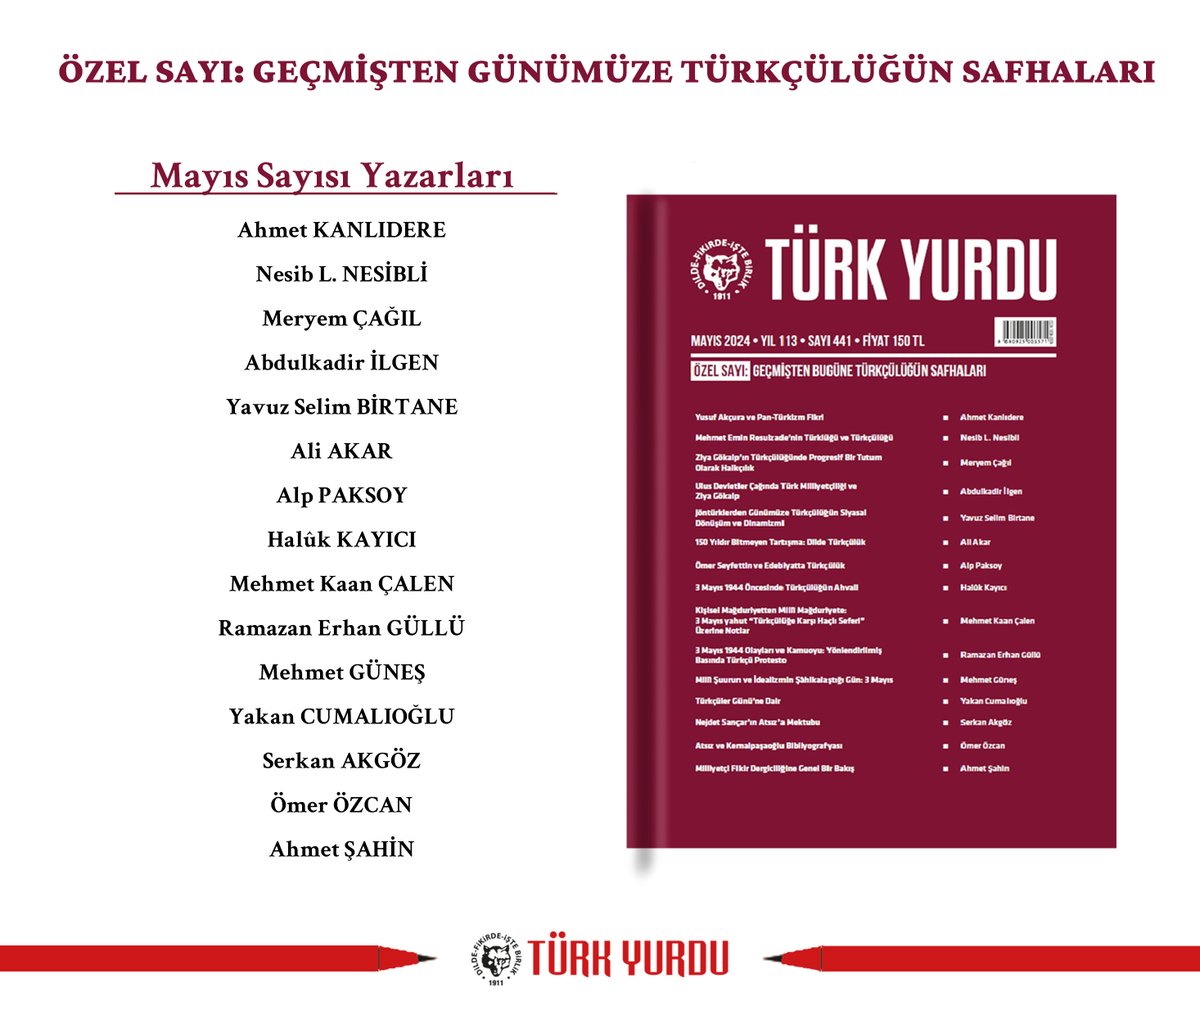 Türk Yurdu Dergisinin Mayıs Sayısı Çıktı! Özel Sayı: Geçmişten Günümüze Türkçülüğün Safhaları